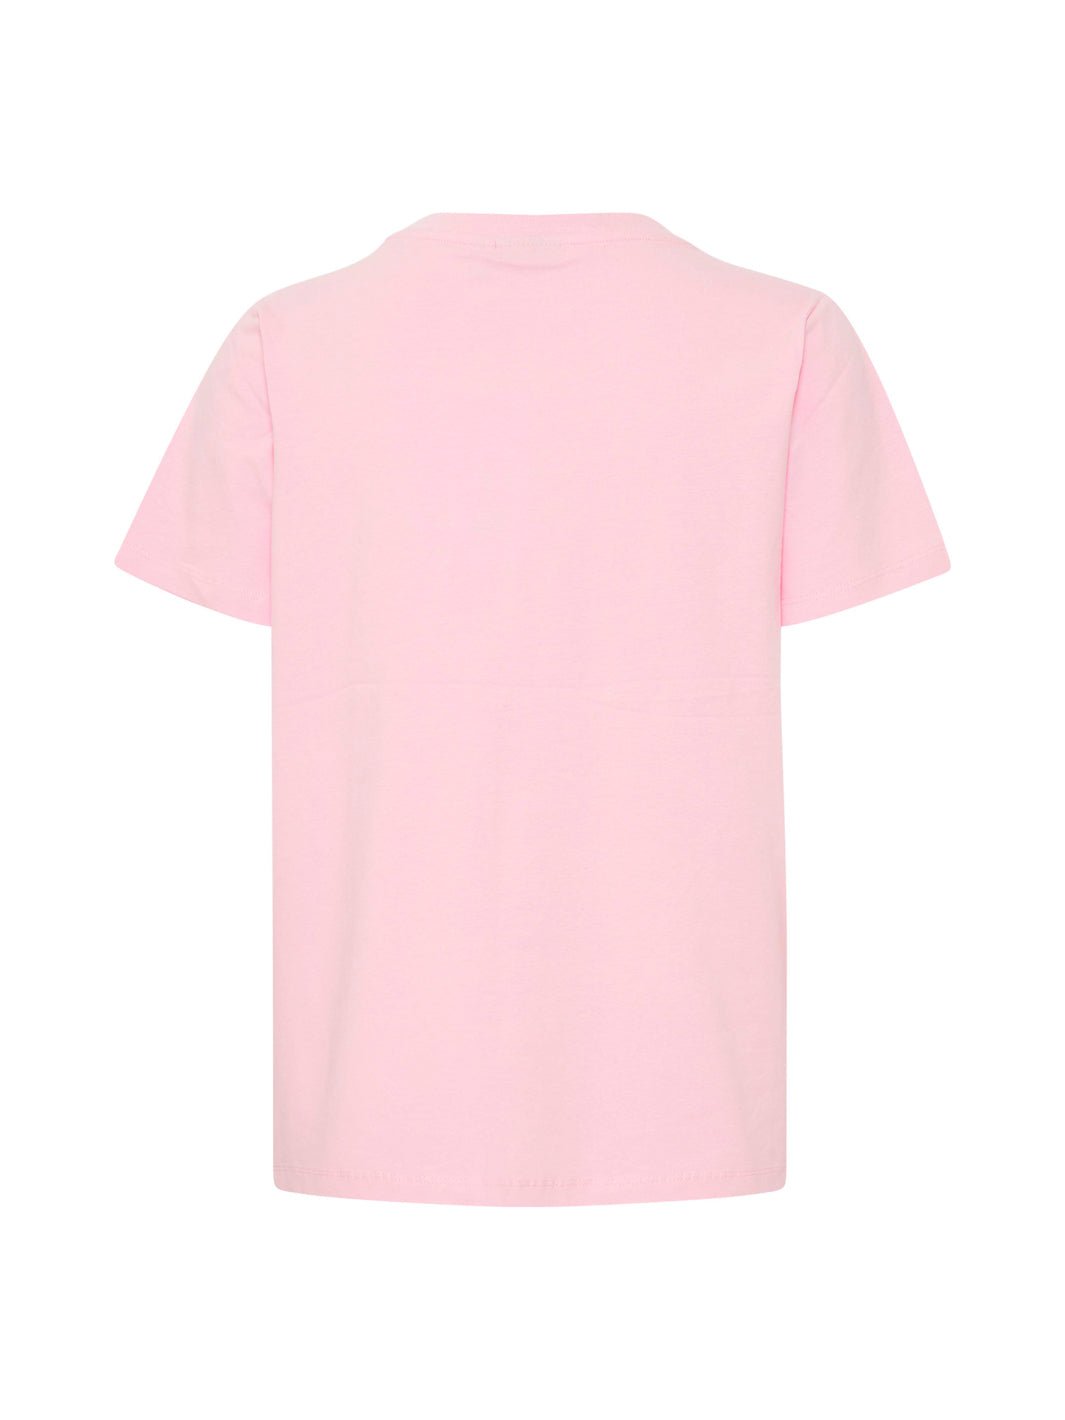 Fransa Zashoulder 1 t-shirt pink frosting - Online-Mode